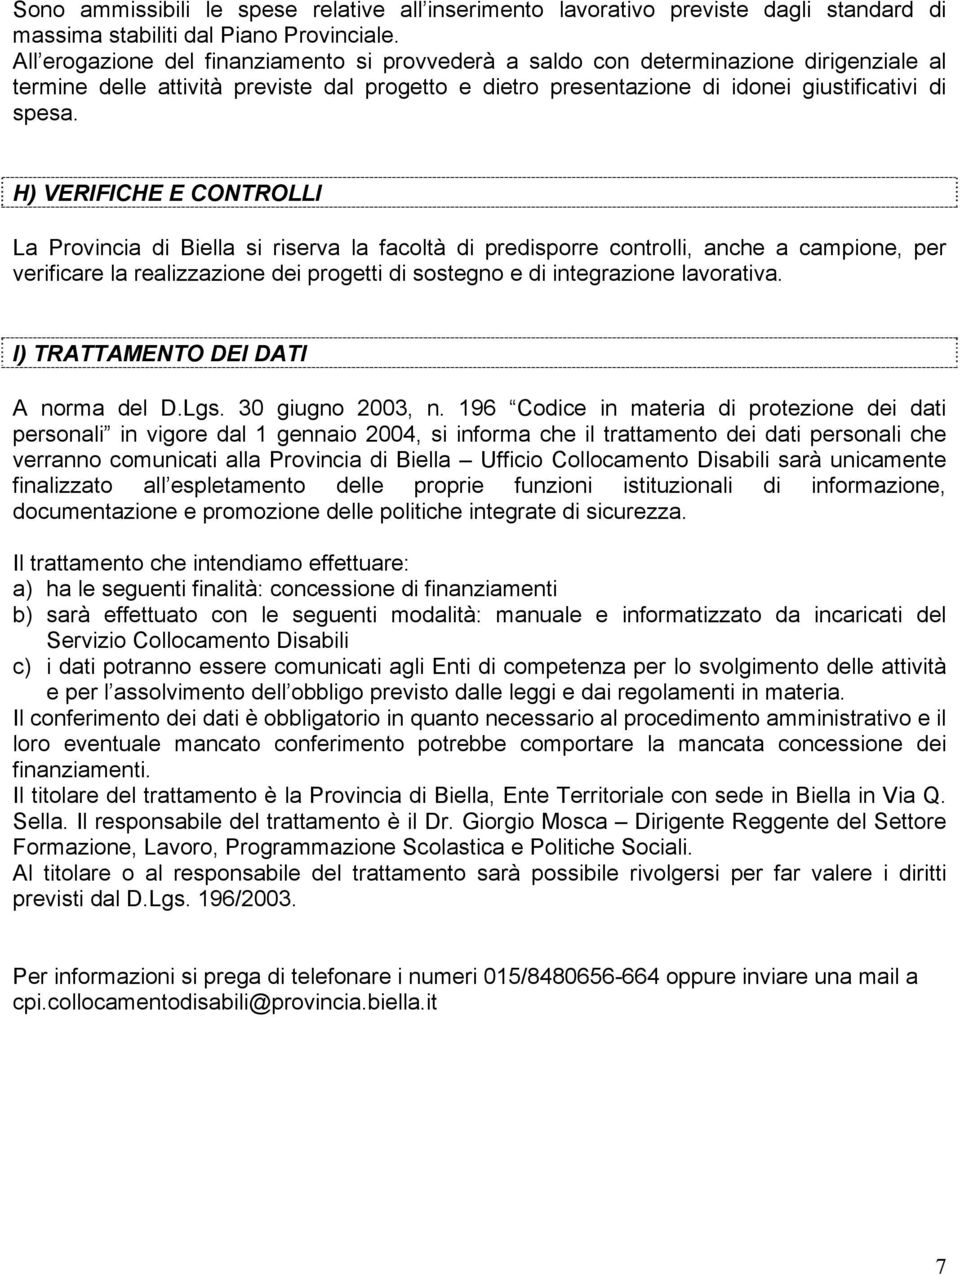 H) VERIFICHE E CONTROLLI La Provincia di Biella si riserva la facoltà di predisporre controlli, anche a campione, per verificare la realizzazione dei progetti di sostegno e di integrazione lavorativa.